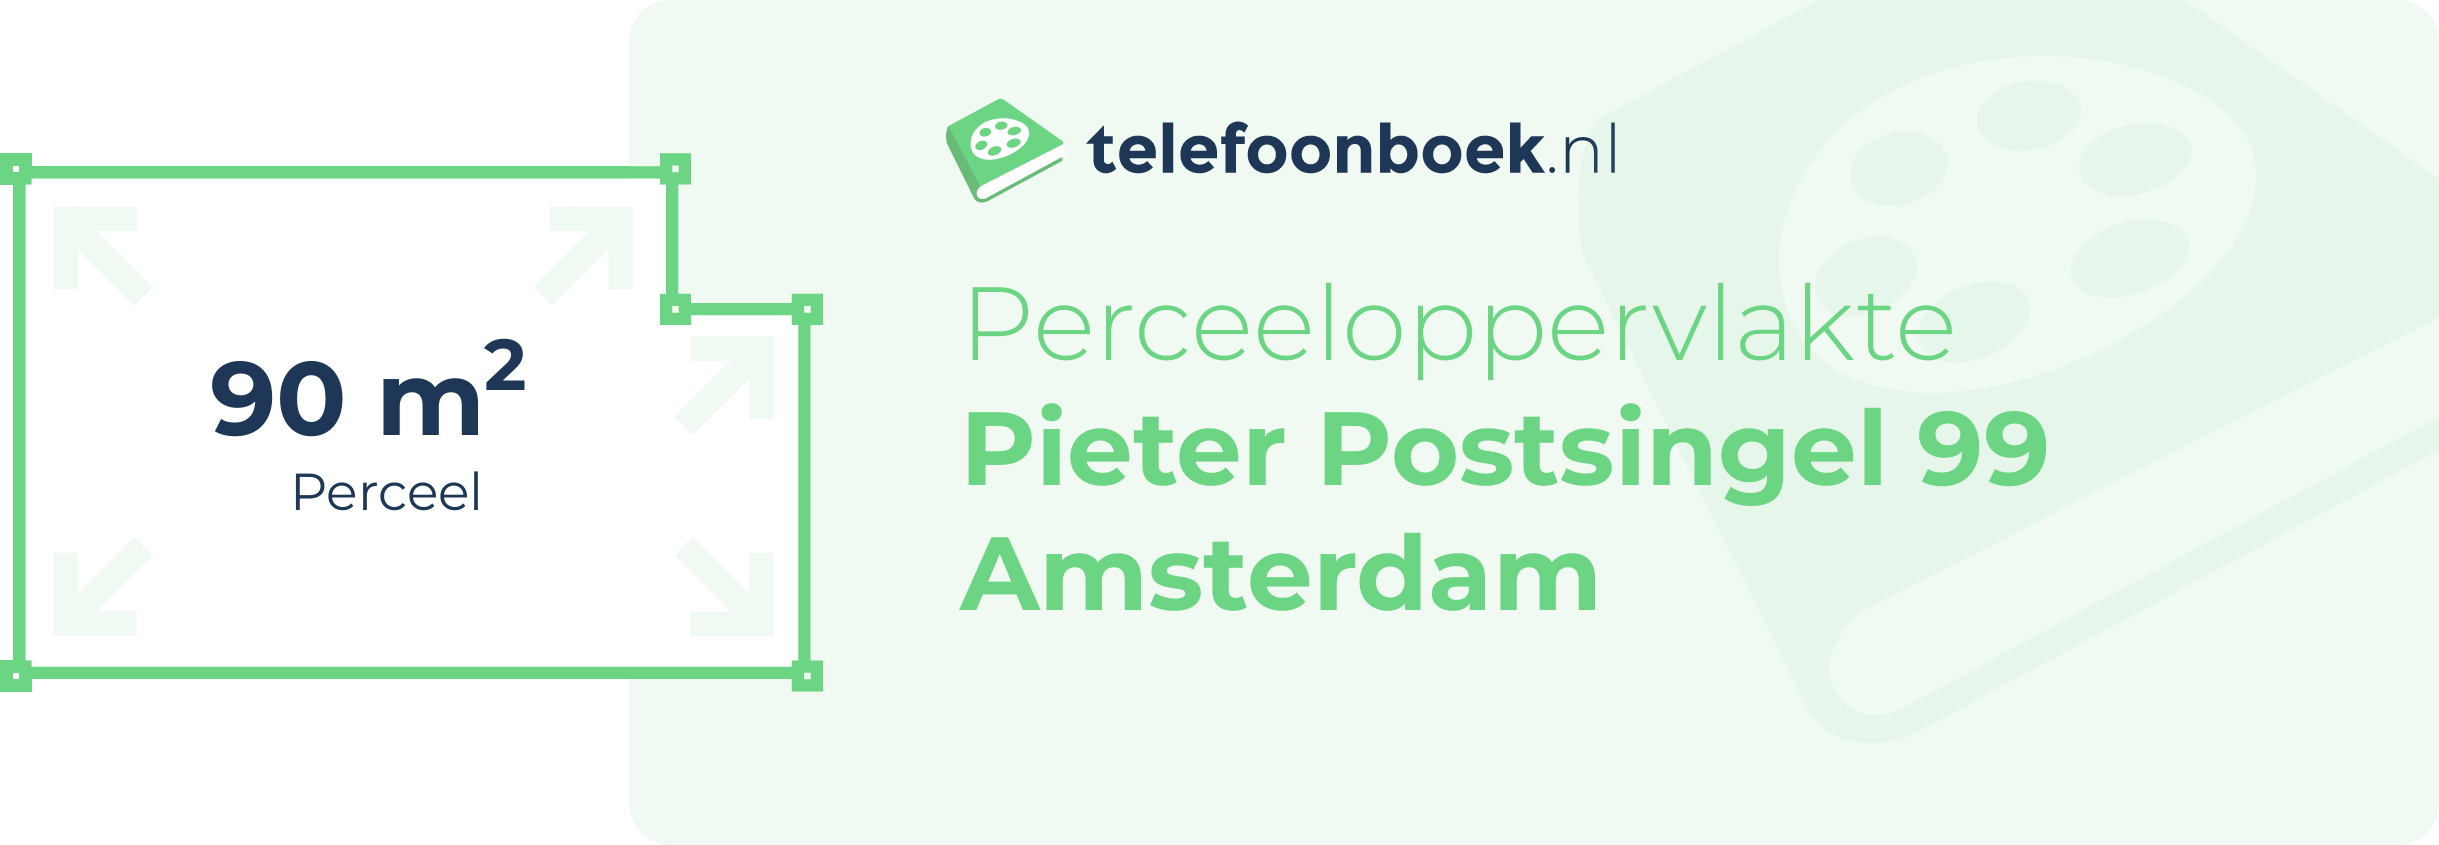 Perceeloppervlakte Pieter Postsingel 99 Amsterdam